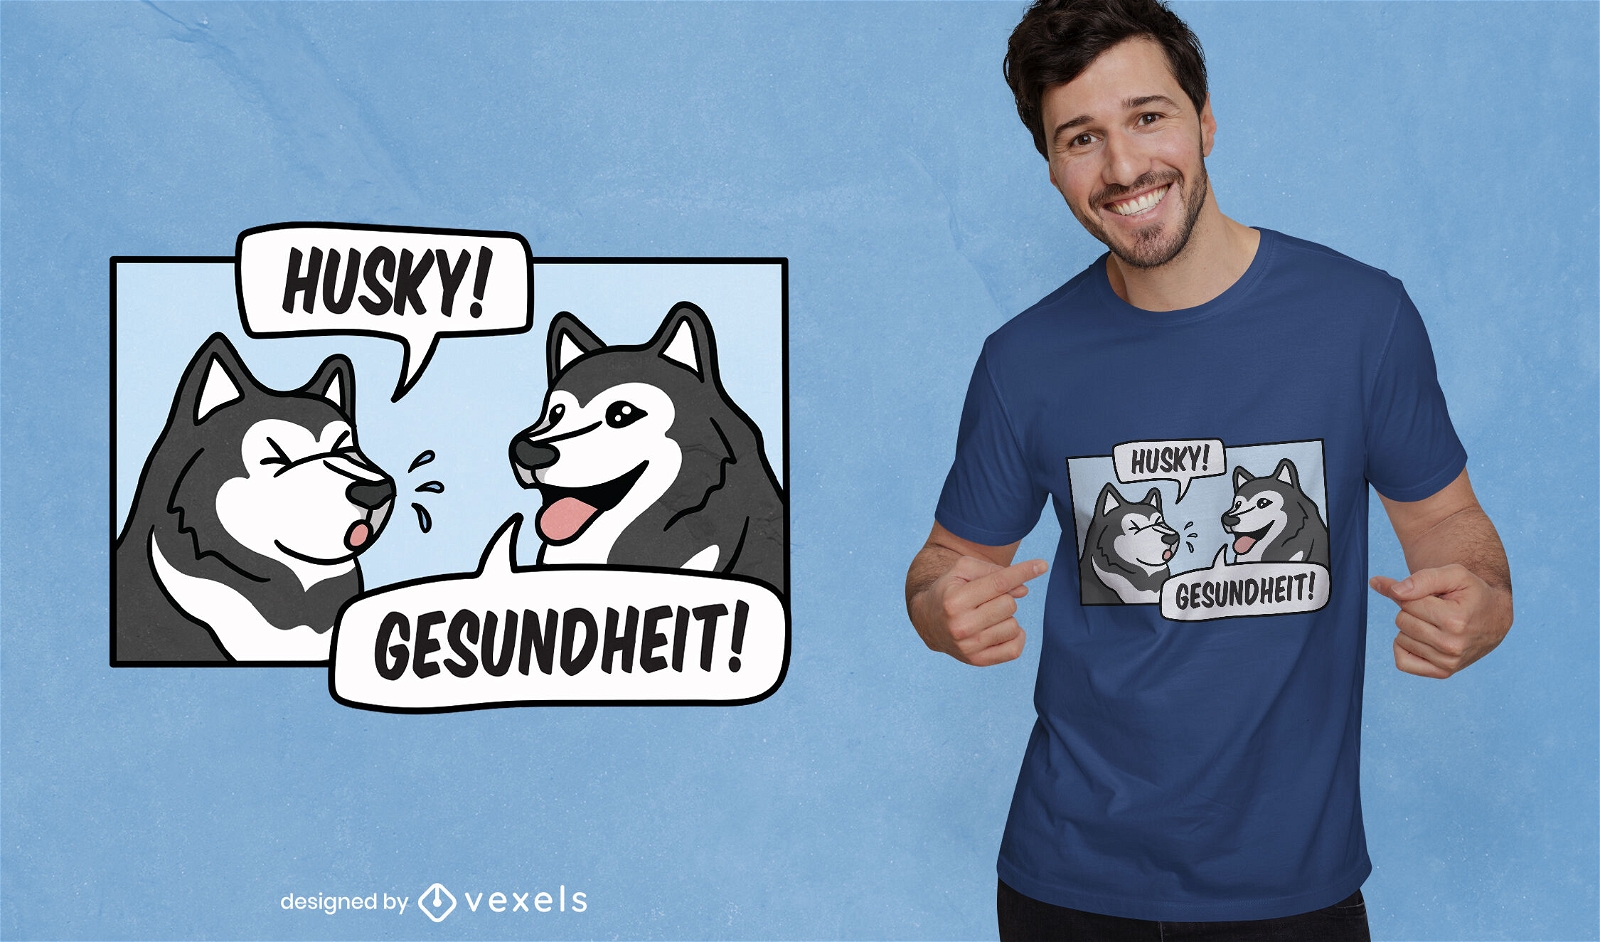 Design de t-shirt husky com espirros